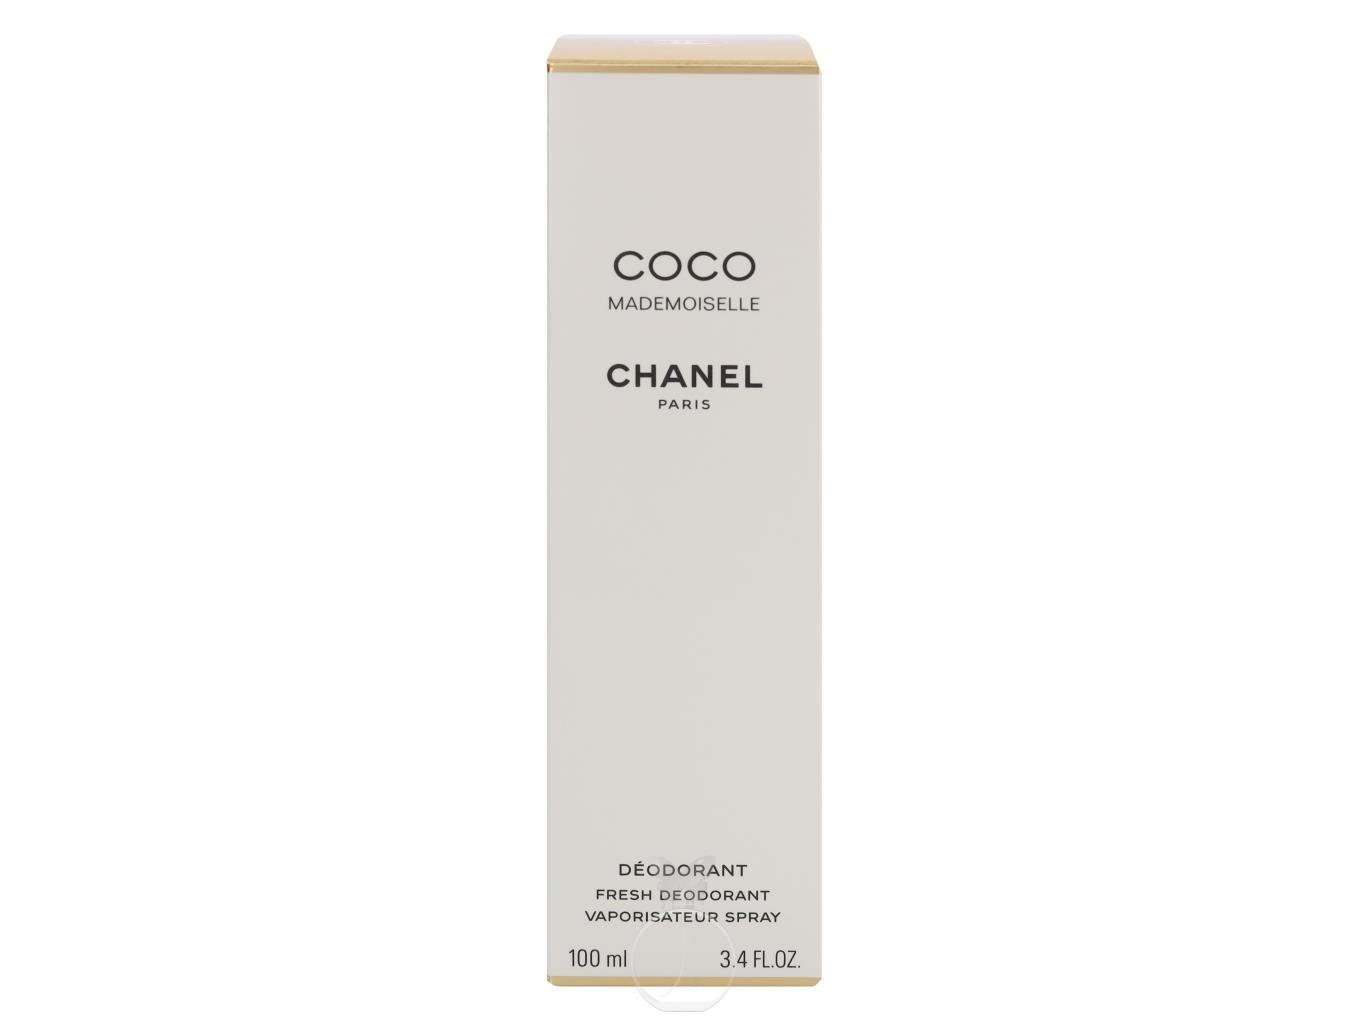 CHANEL Körperpflegeduft Chanel ml Deodorant Coco Mademoiselle 100